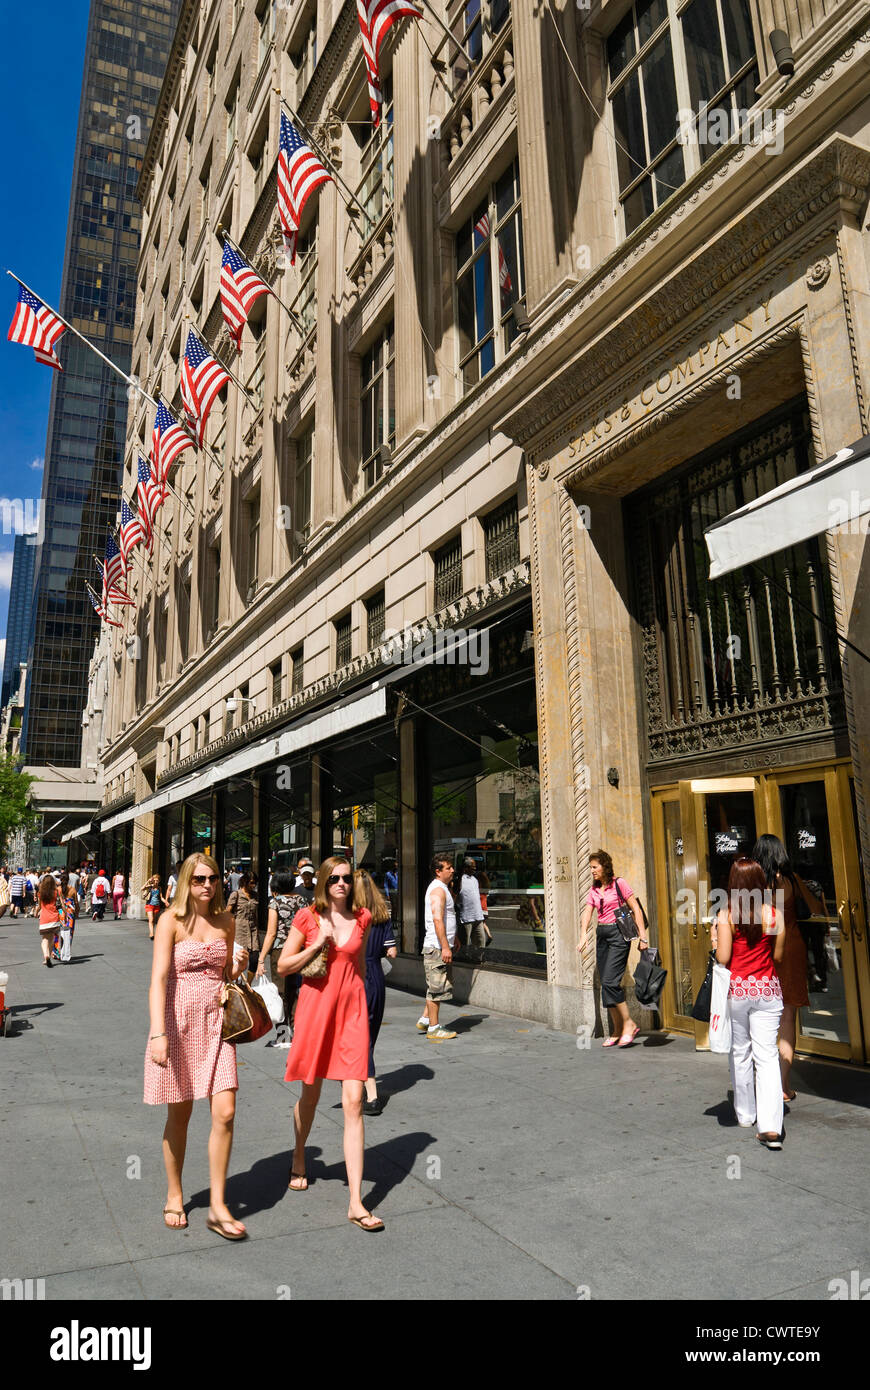 Saks Fifth Avenue Department Store e la folla di acquirenti e turisti, Fifth Avenue, New York City. Foto Stock